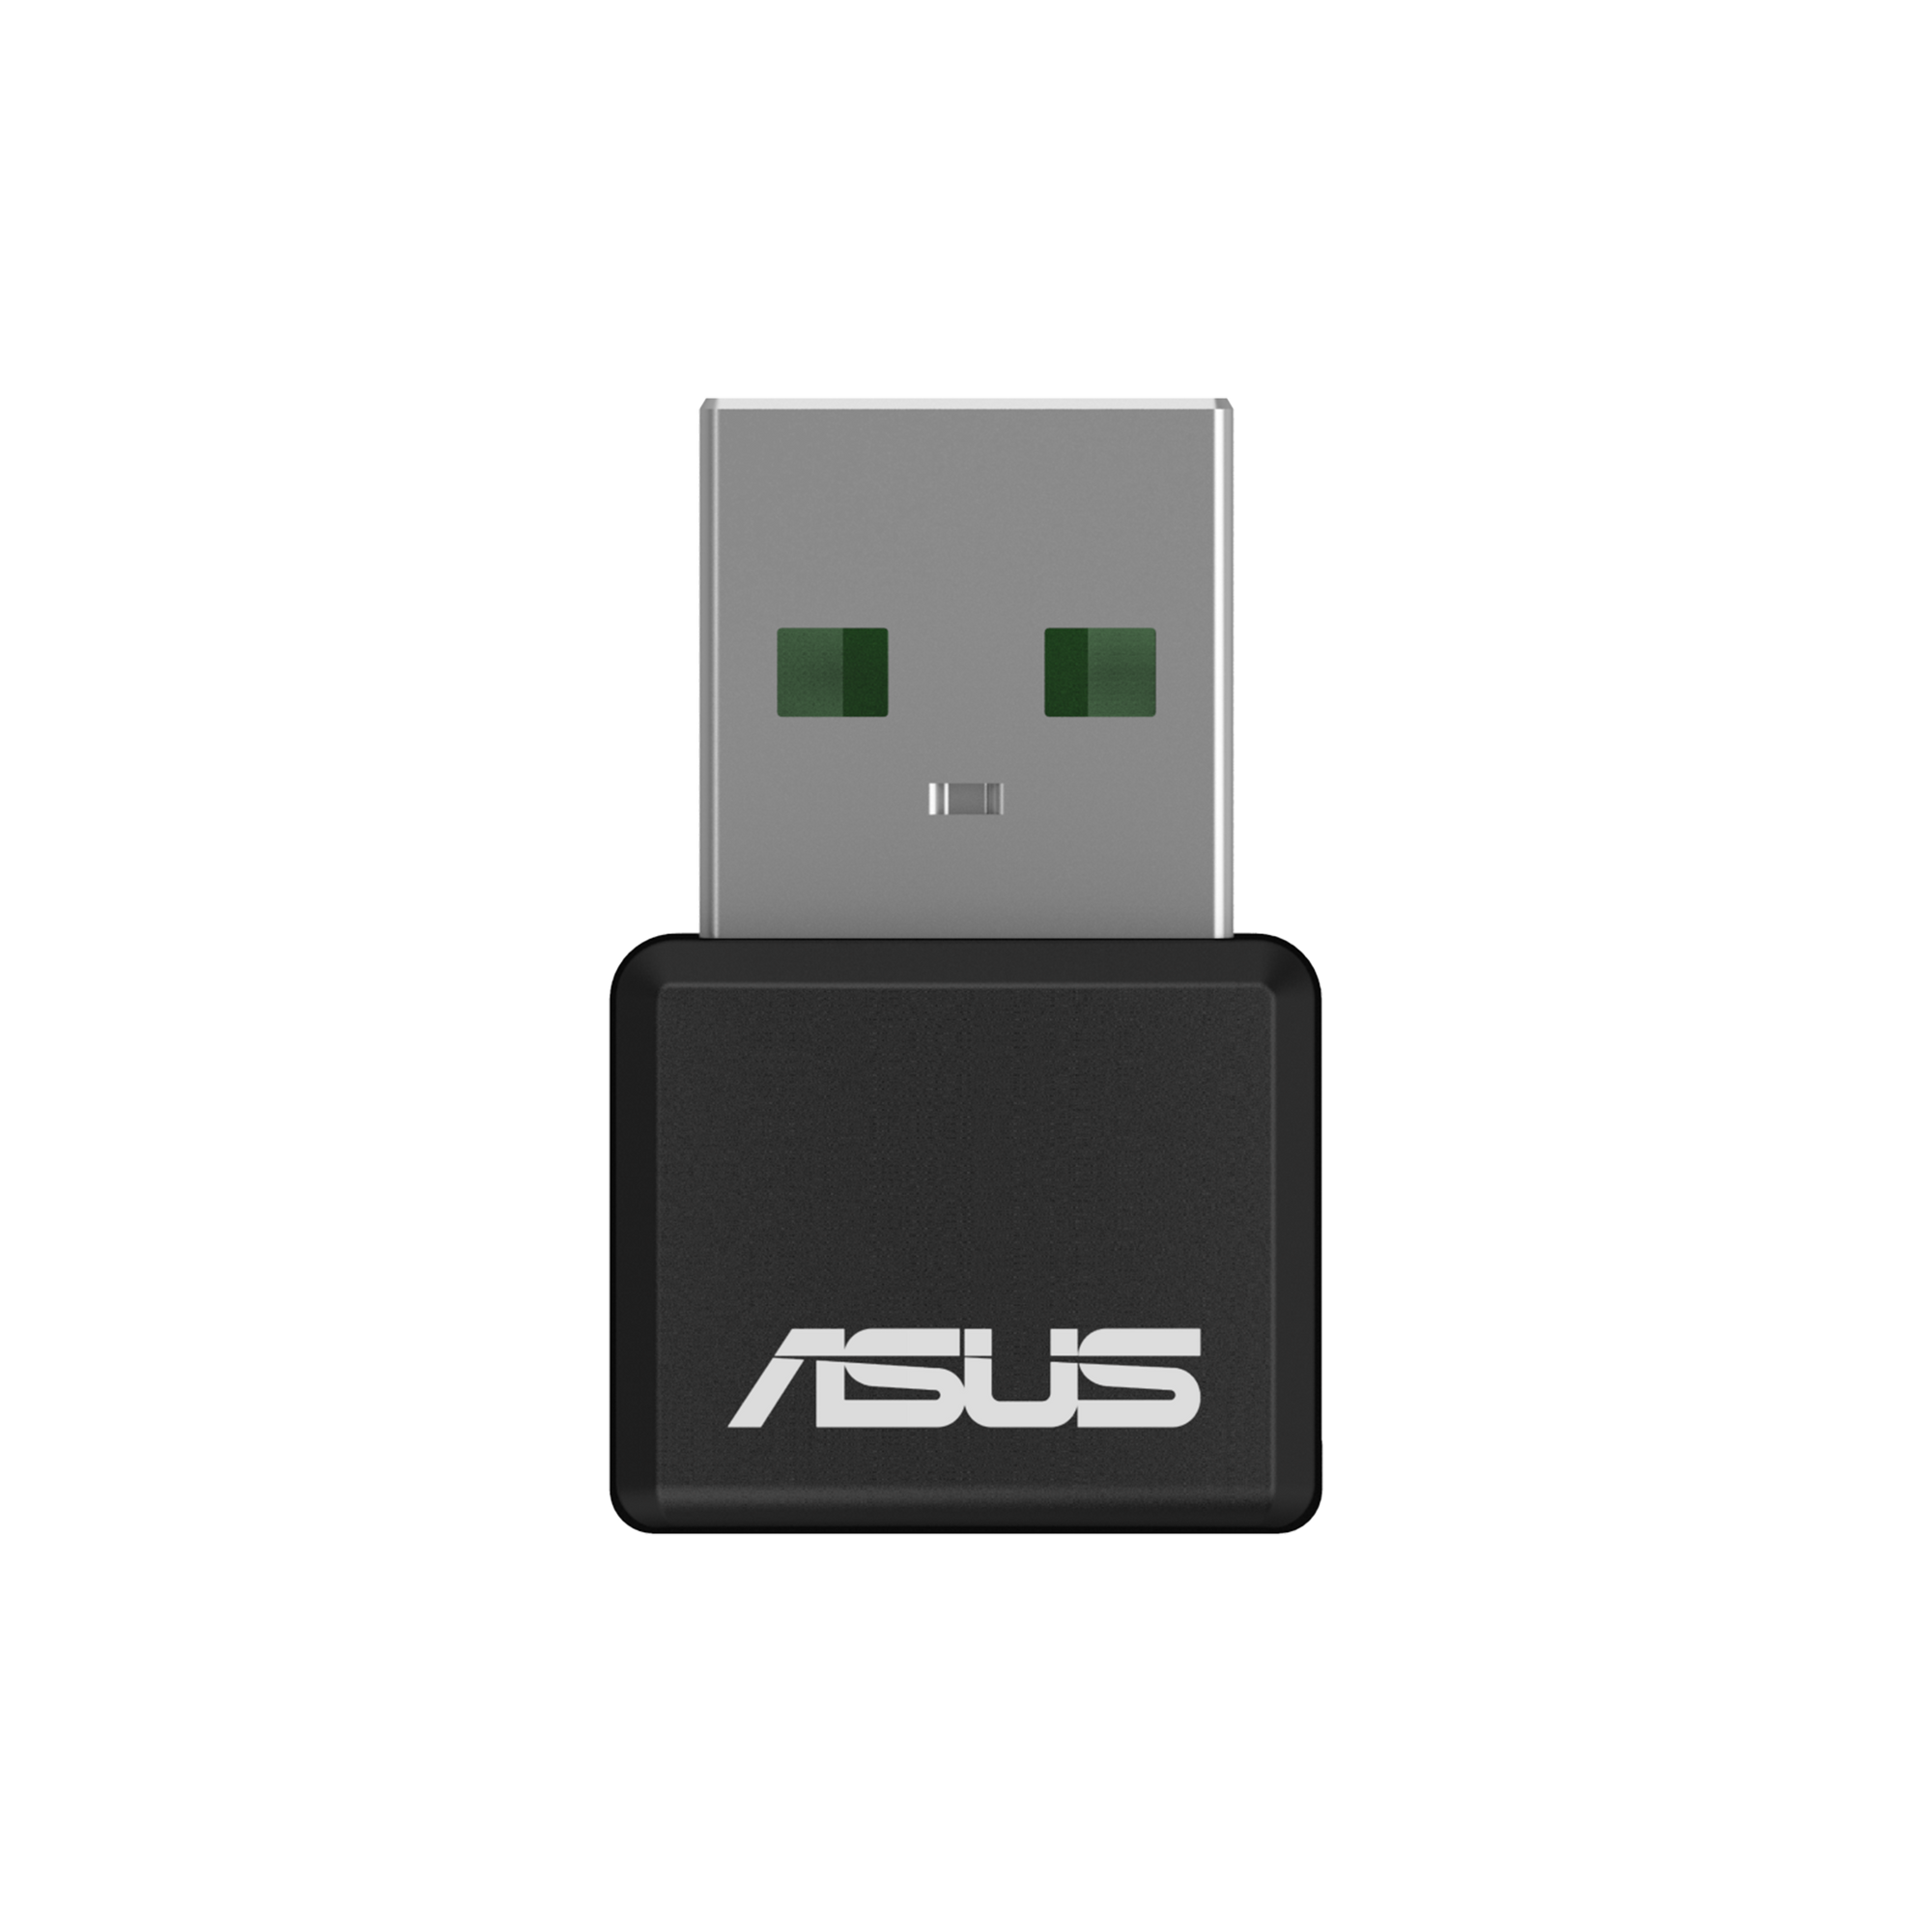 USB-AX55 Nano 2